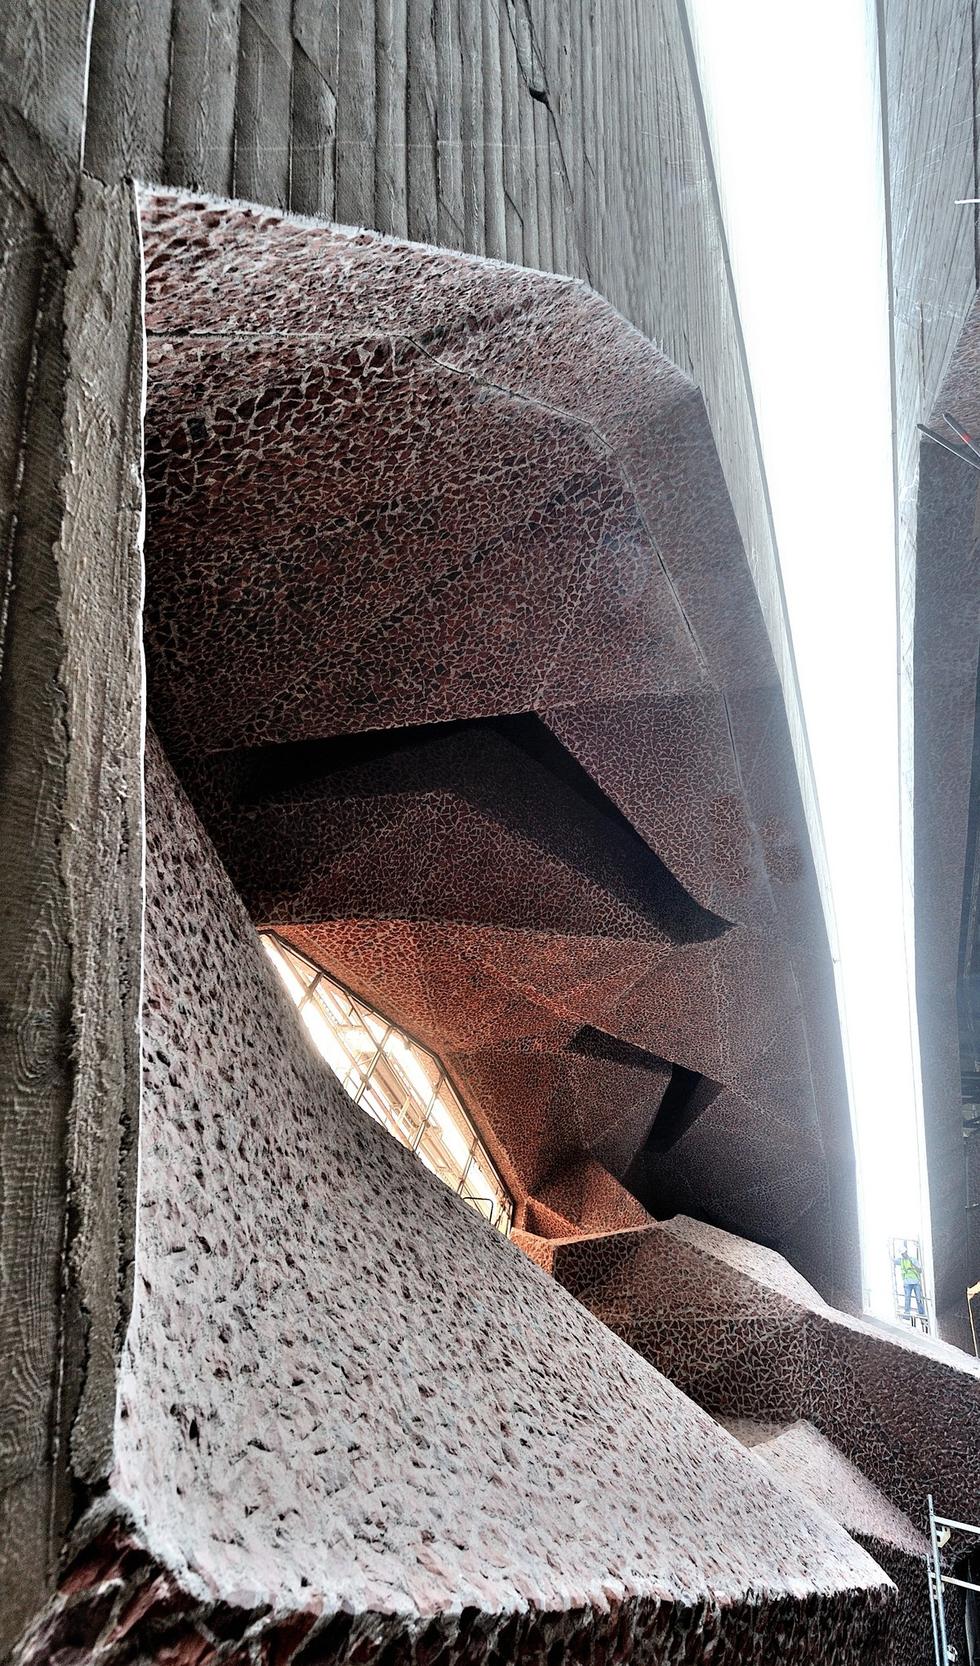 Beton Cemex wykorzystany w Centrum Konkresowo-Kulturalnym Jordanki w Toruniu